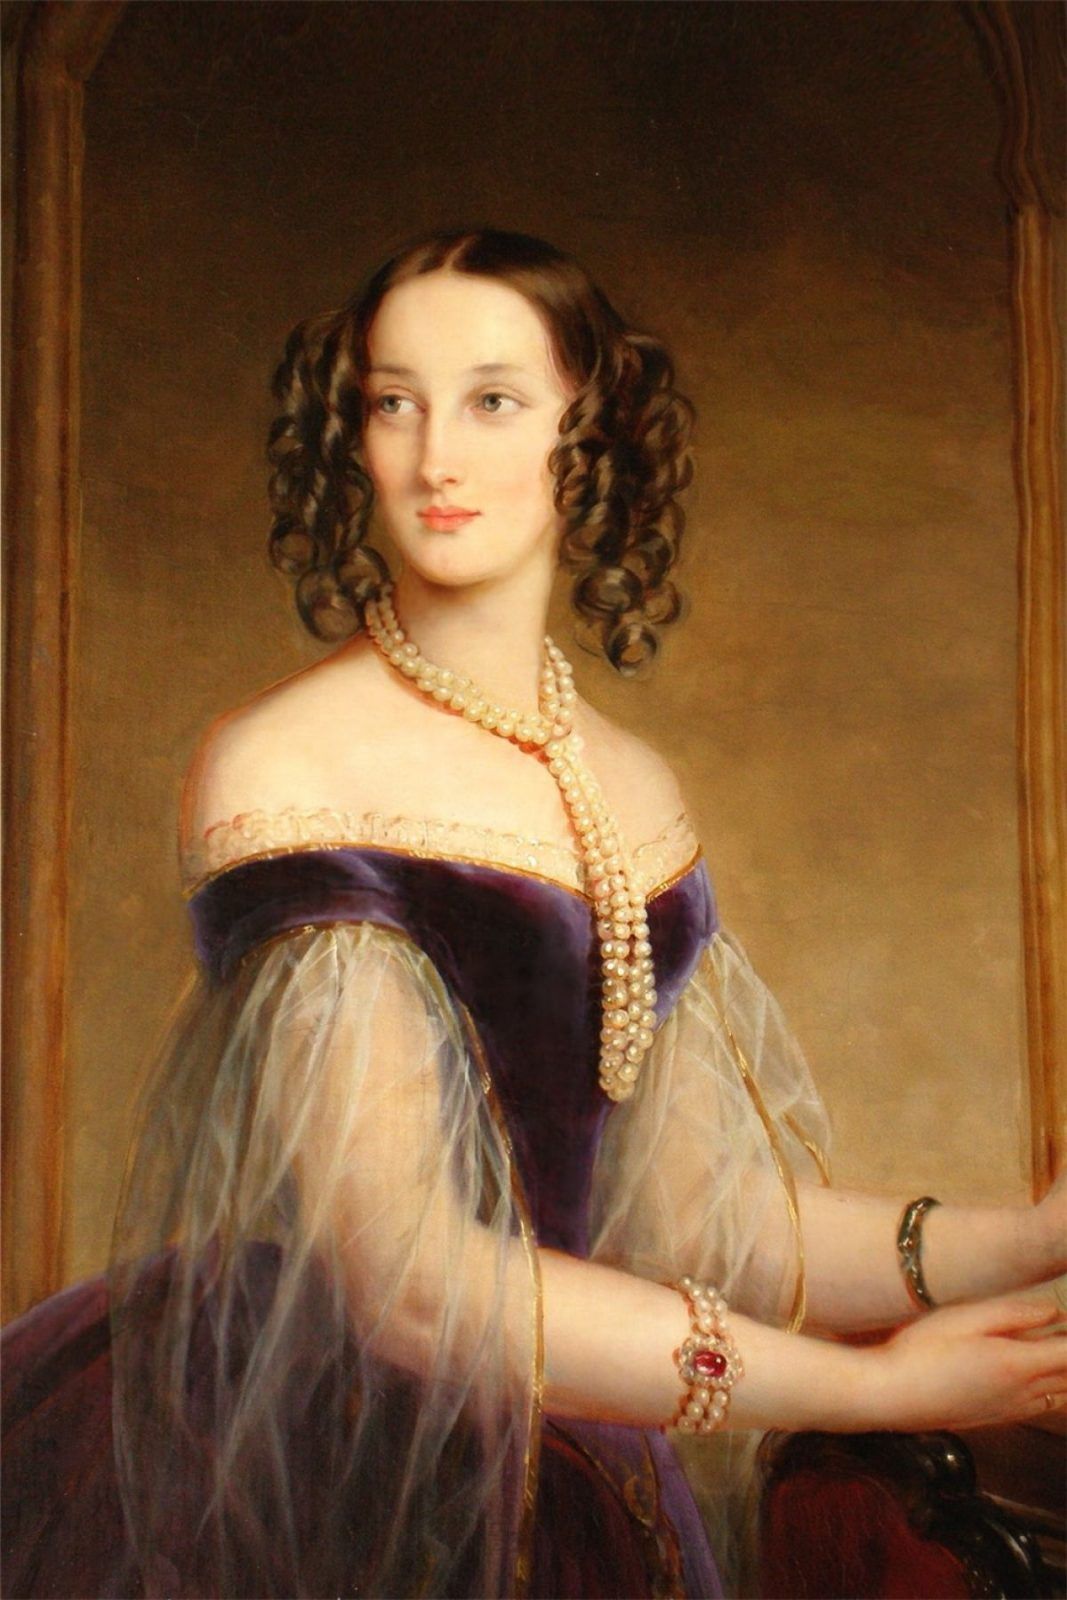 Великая Княгиня Мария Николаевна (18 августа 1819 - 21 февраля 1876) дочь Императора Николая I, сестрой Александра II и тётя Александра III. В 1839 году она вышла замуж за Максимилиана, герцога Лейхтенбергского. Она была коллекционером и президентом Императорской Академии художеств в Санкт-Петербурге.